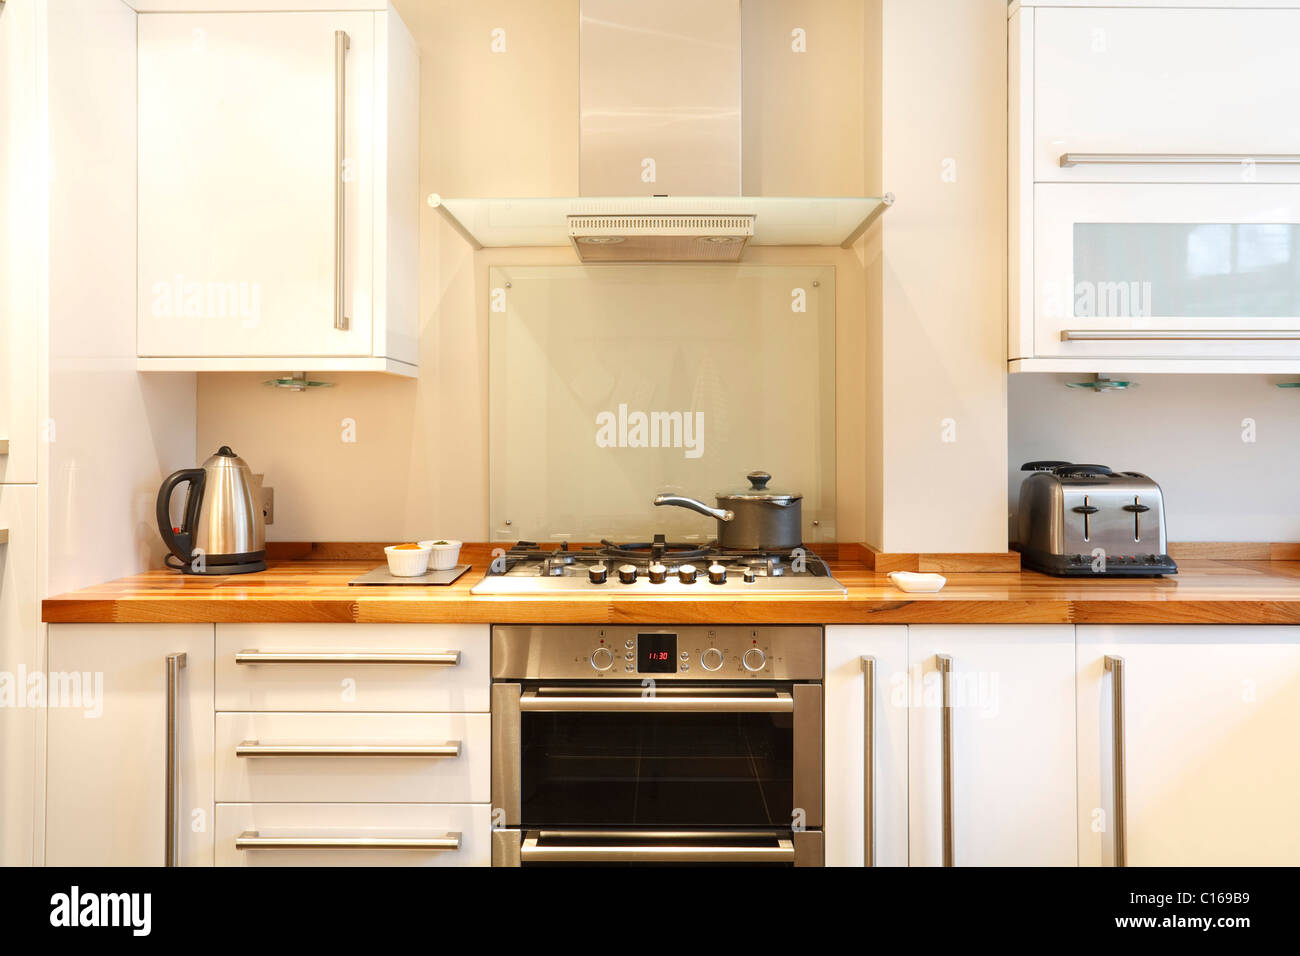 Moderne Küche mit Gas-Kochfeld, Dunstesse, Holz Arbeitsplatten und Geräten aus rostfreiem Stahl Stockfoto